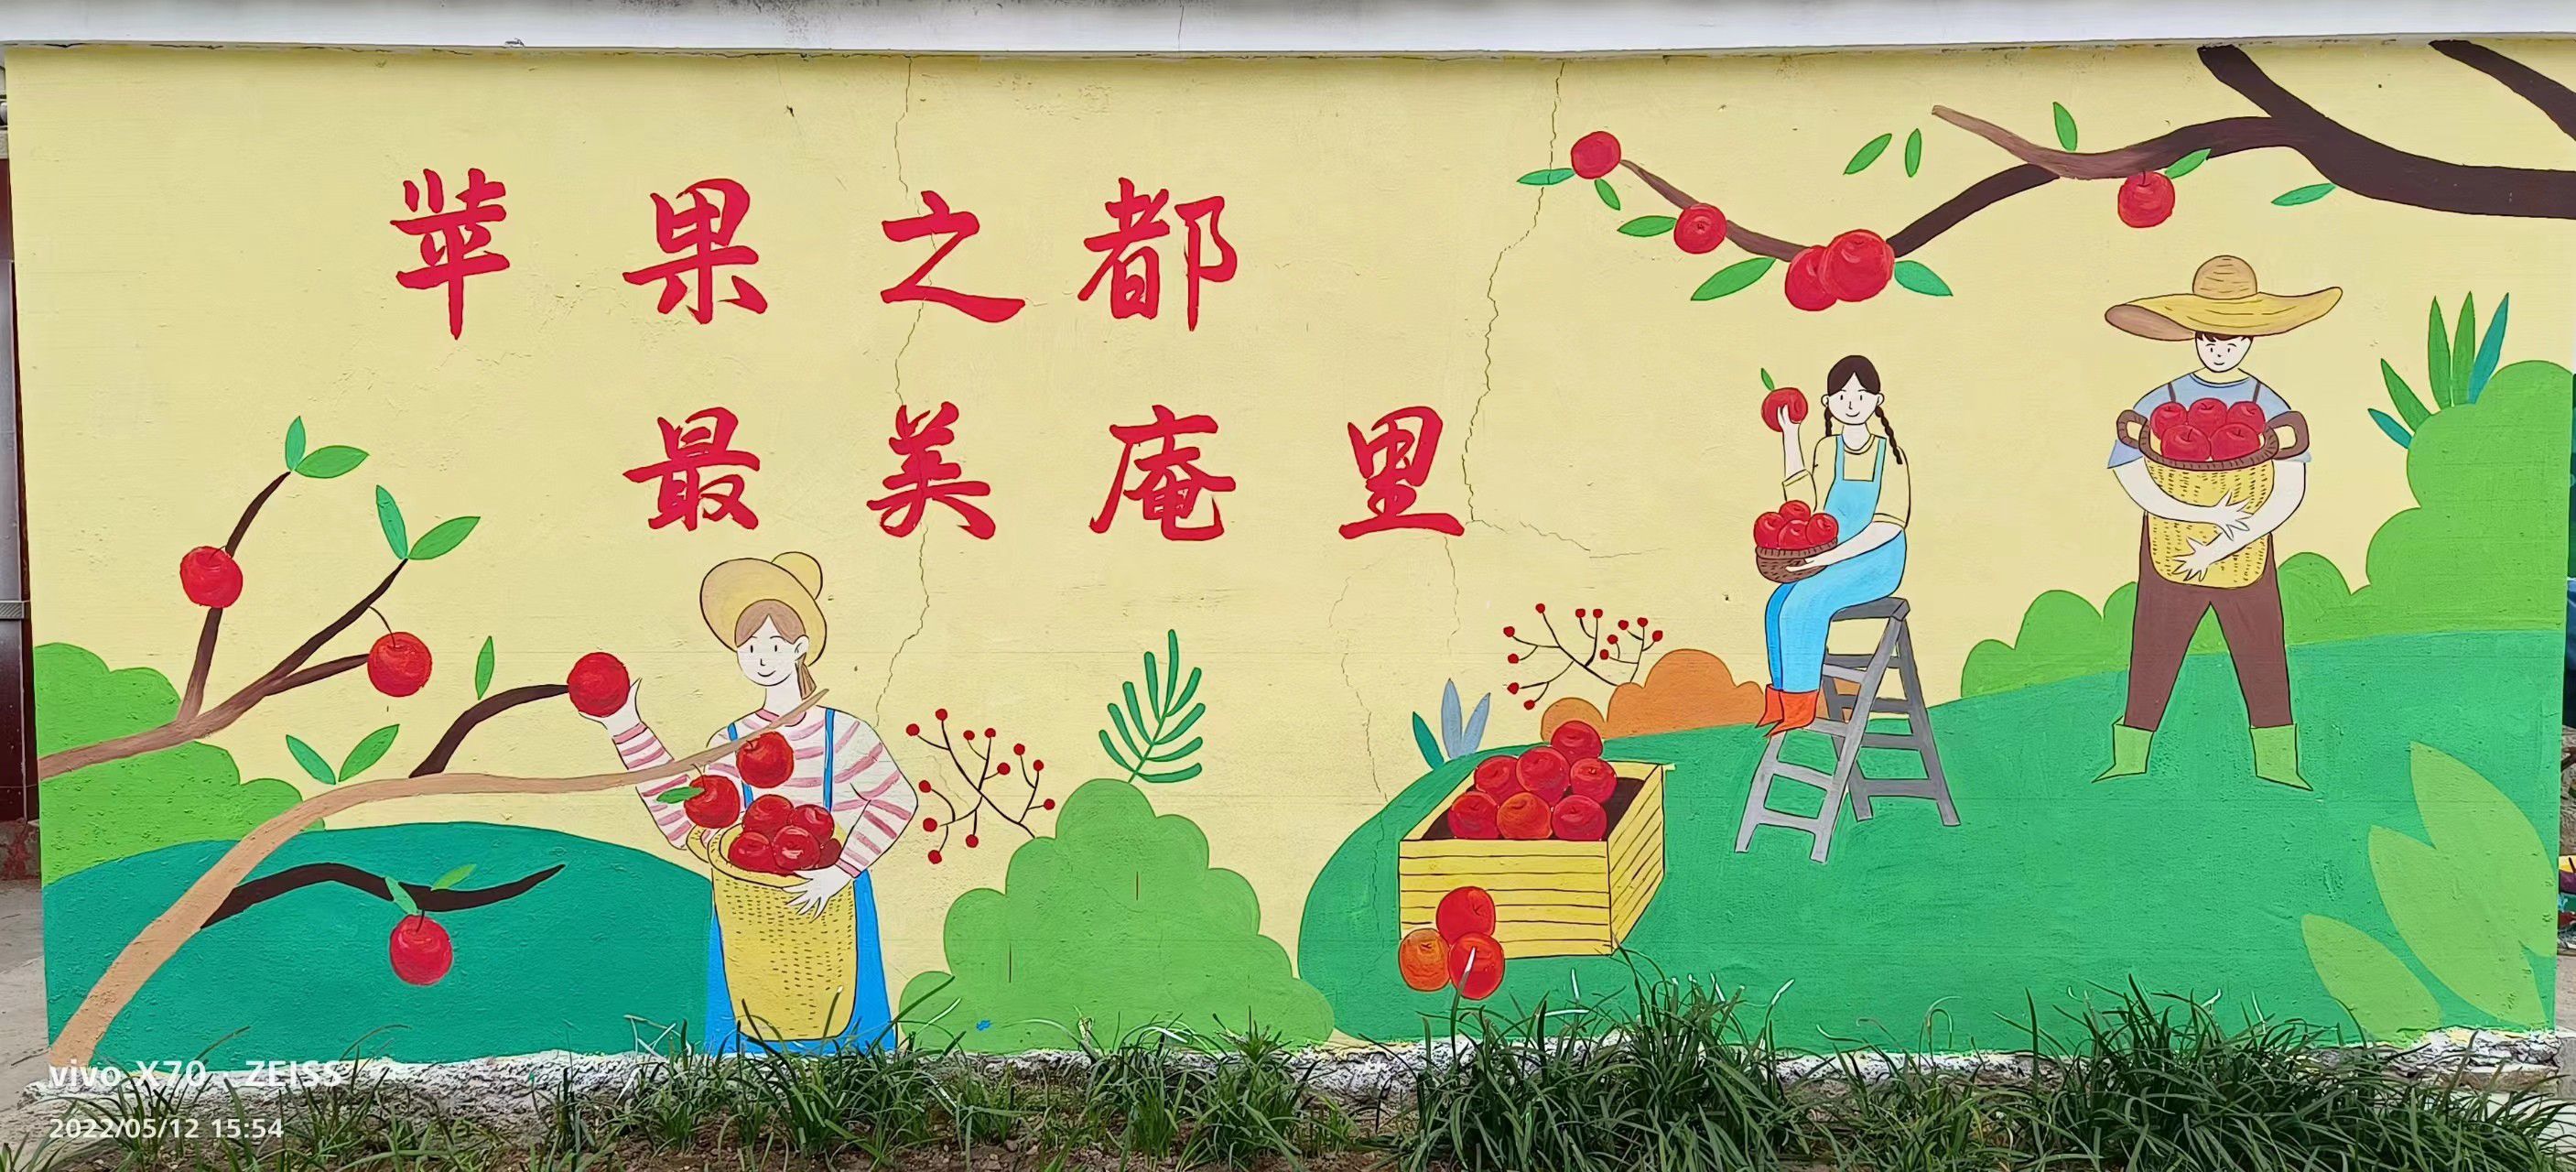 芜湖墙体彩绘